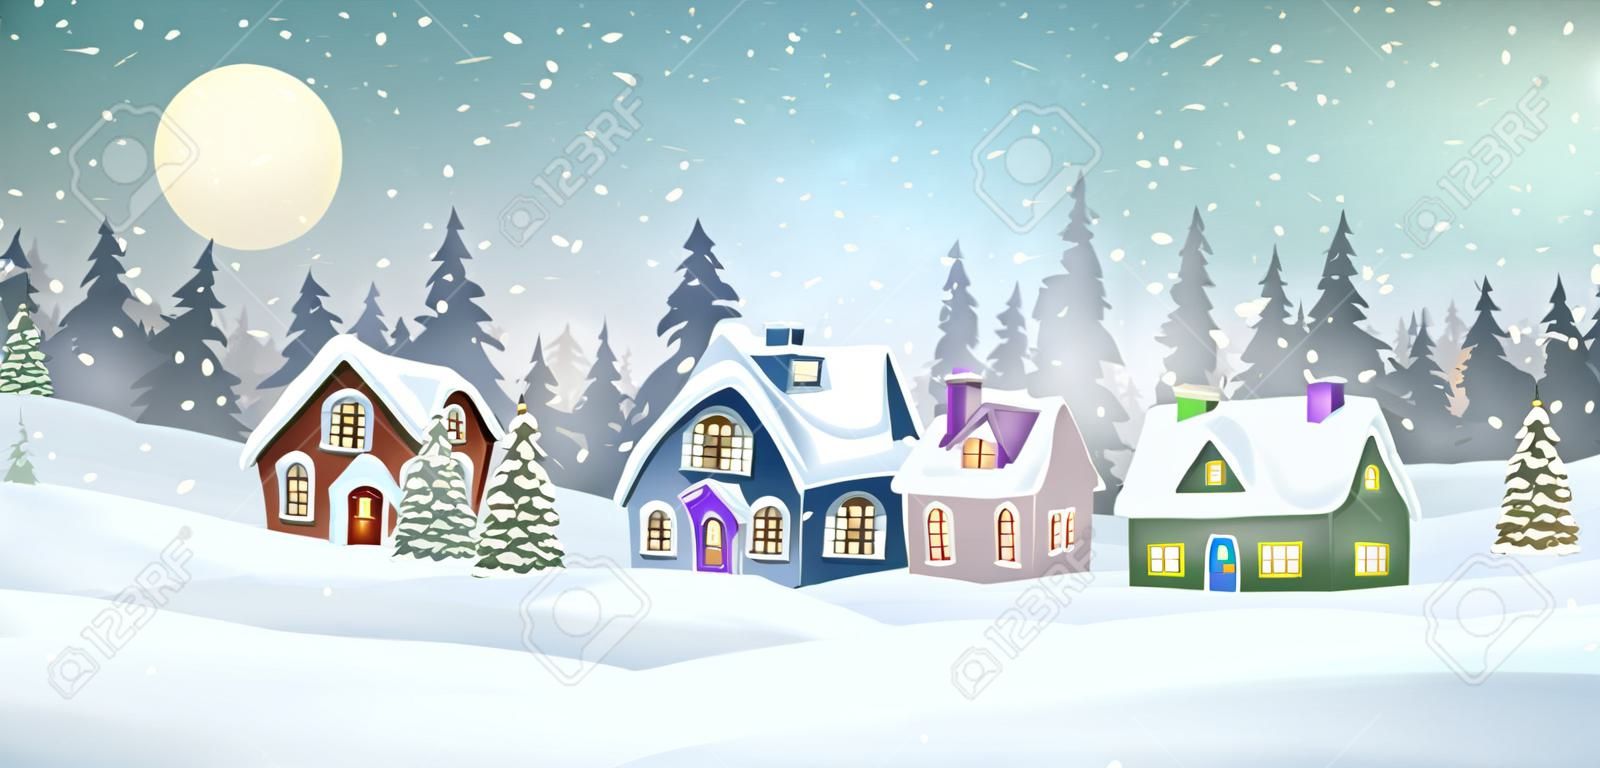 소나무 숲 크리스마스 휴일 벡터 일러스트 레이 션에 눈 덮힌 집들이 있는 겨울 마을 풍경